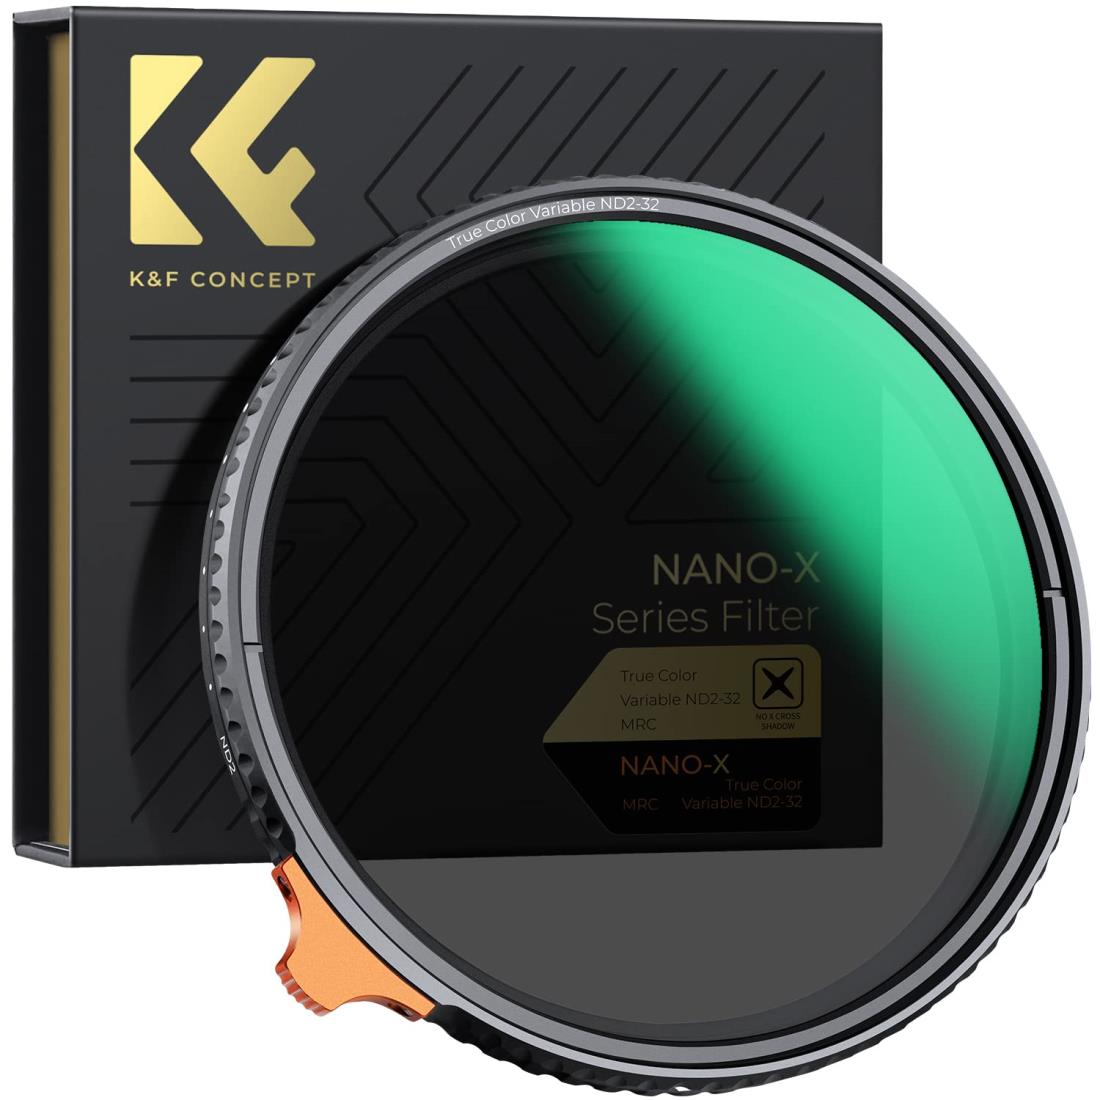 K F Concept 67mm 可変NDフィルター ND2-ND32 TRUE COLOR 黄色被り解消可能 両面28層コーティング 光学ガラス 撥水撥油キズ防止 フィルターケース付き （NANO-Xシリーズ）